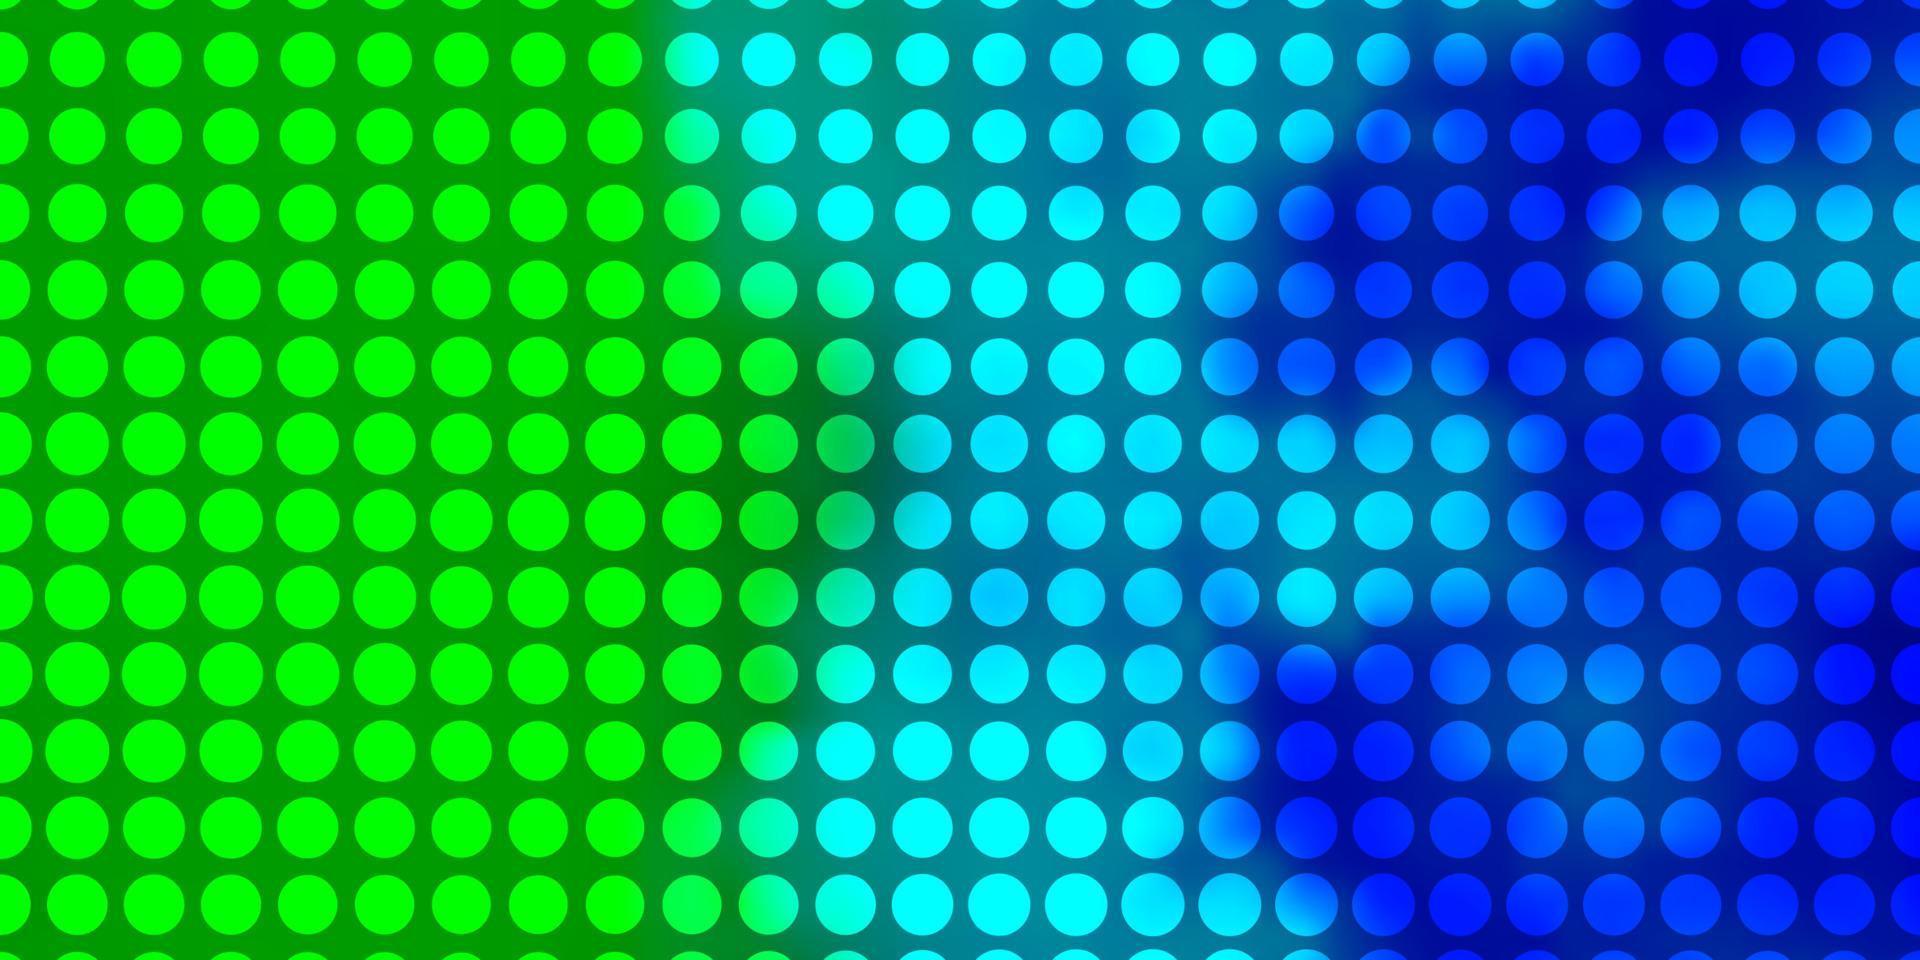 Fondo de vector azul claro, verde con círculos.